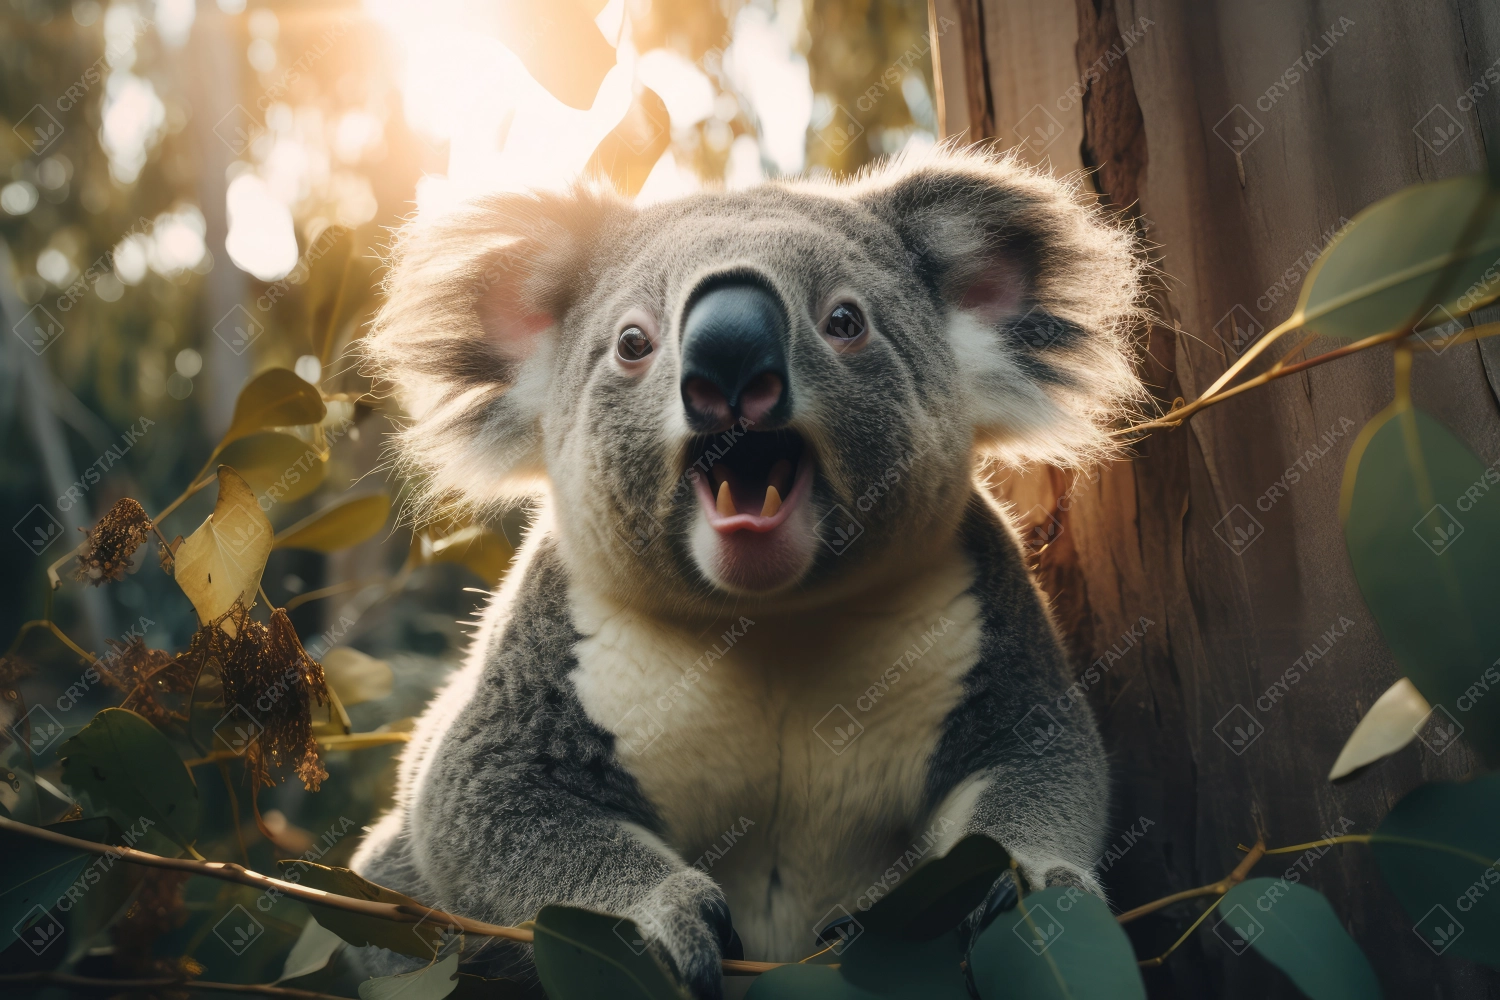 Koala portrait